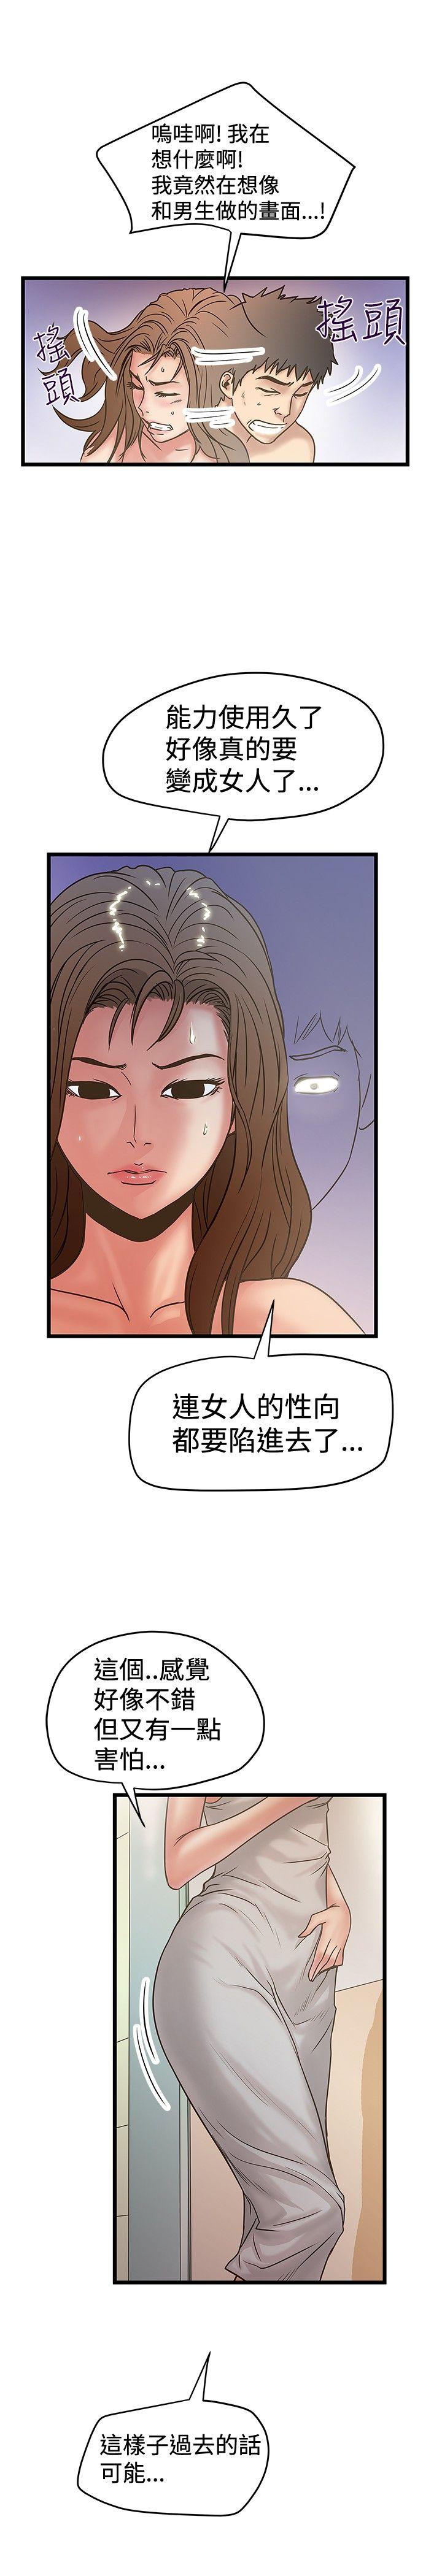 韩国污漫画 想像狂熱 第30话 13